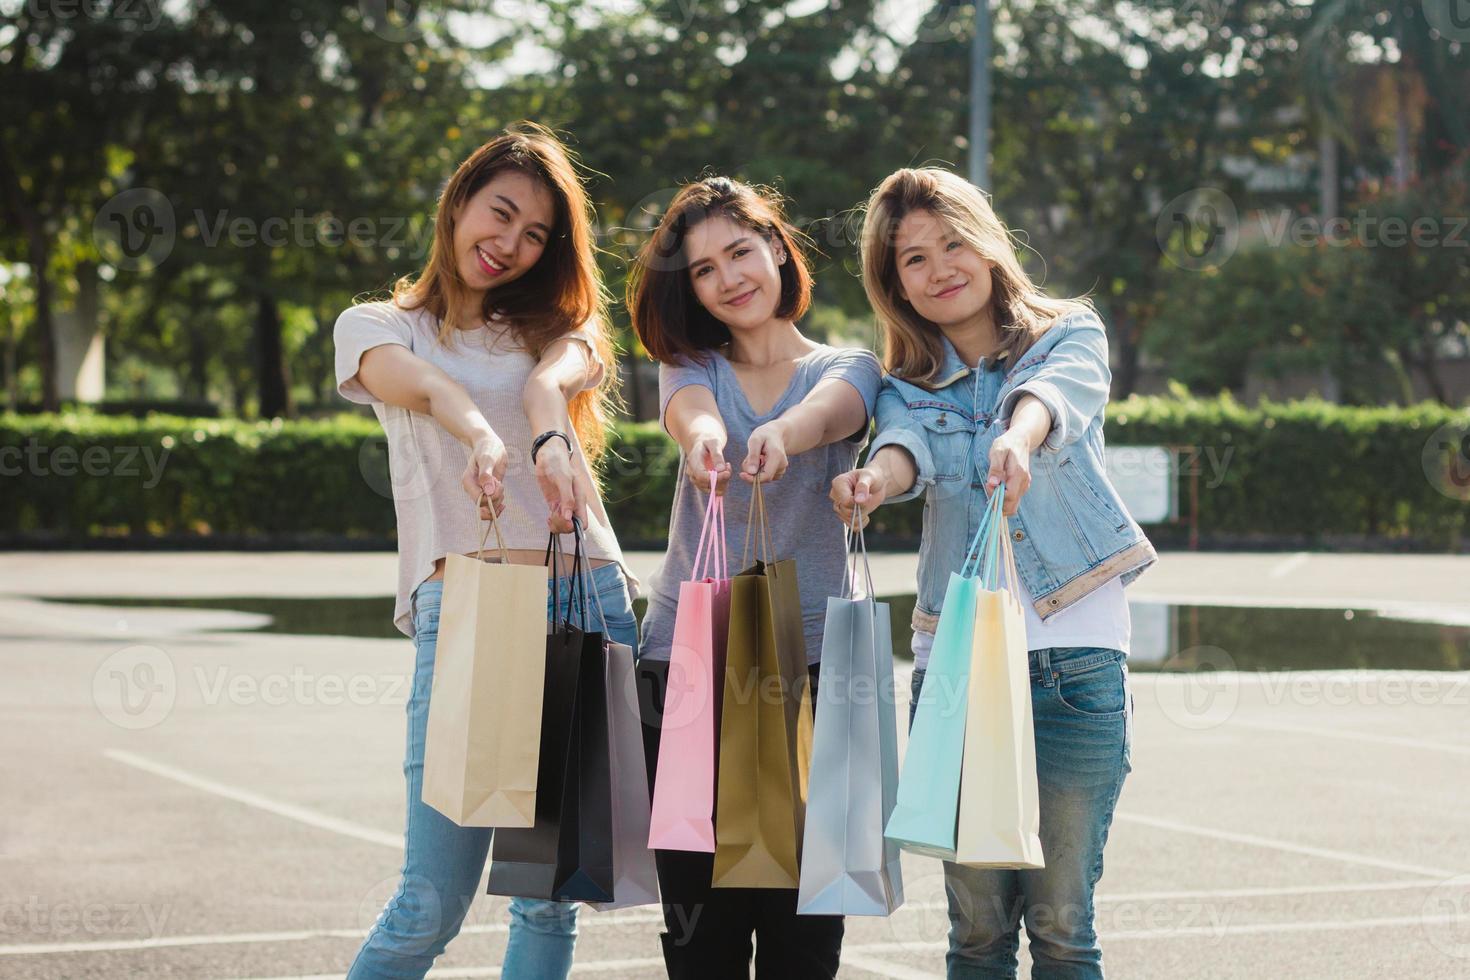 groep jonge aziatische vrouw winkelen in een openluchtmarkt met boodschappentassen in hun handen. jonge aziatische vrouwen laten zien wat ze in de boodschappentas hebben gekregen onder warm zonlicht. groep buiten winkelen concept. foto